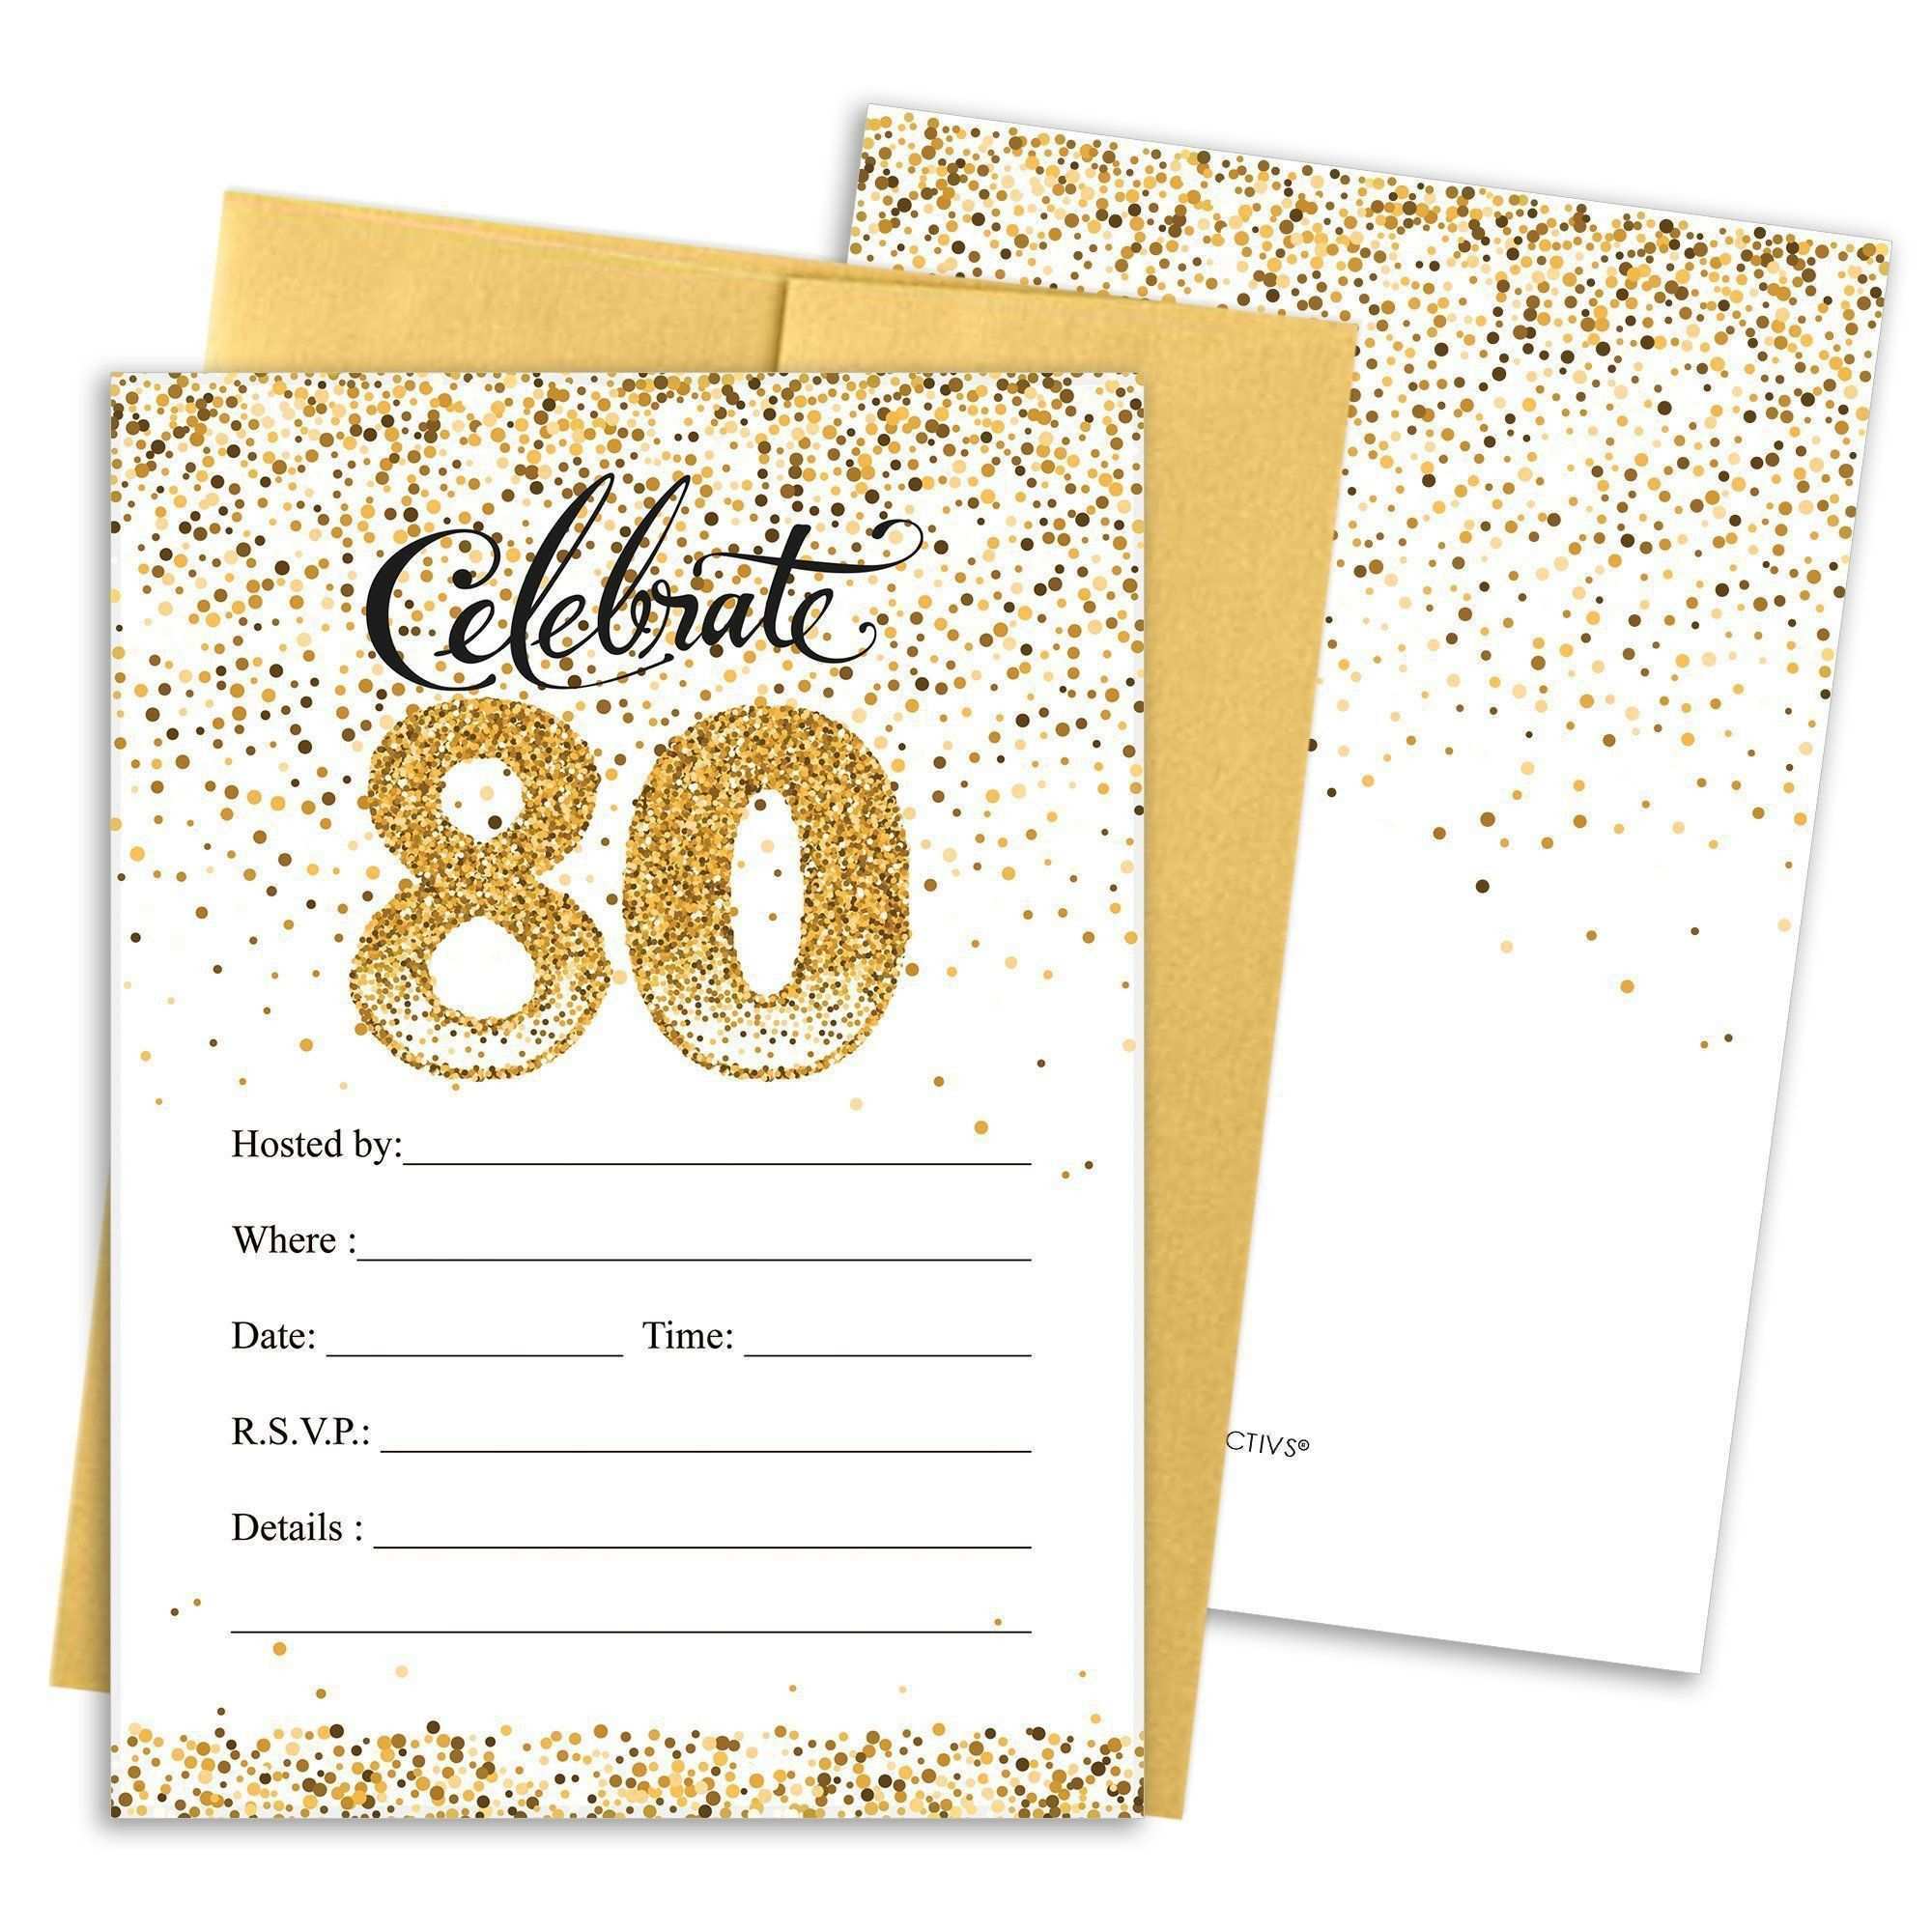 Einladungskarten Geburtstag Bayerisch Kostenlos Beautiful Einladungskarten 80 Geburtstag Kostenlos Ausdrucken Geburtstagsgeschenke Karten